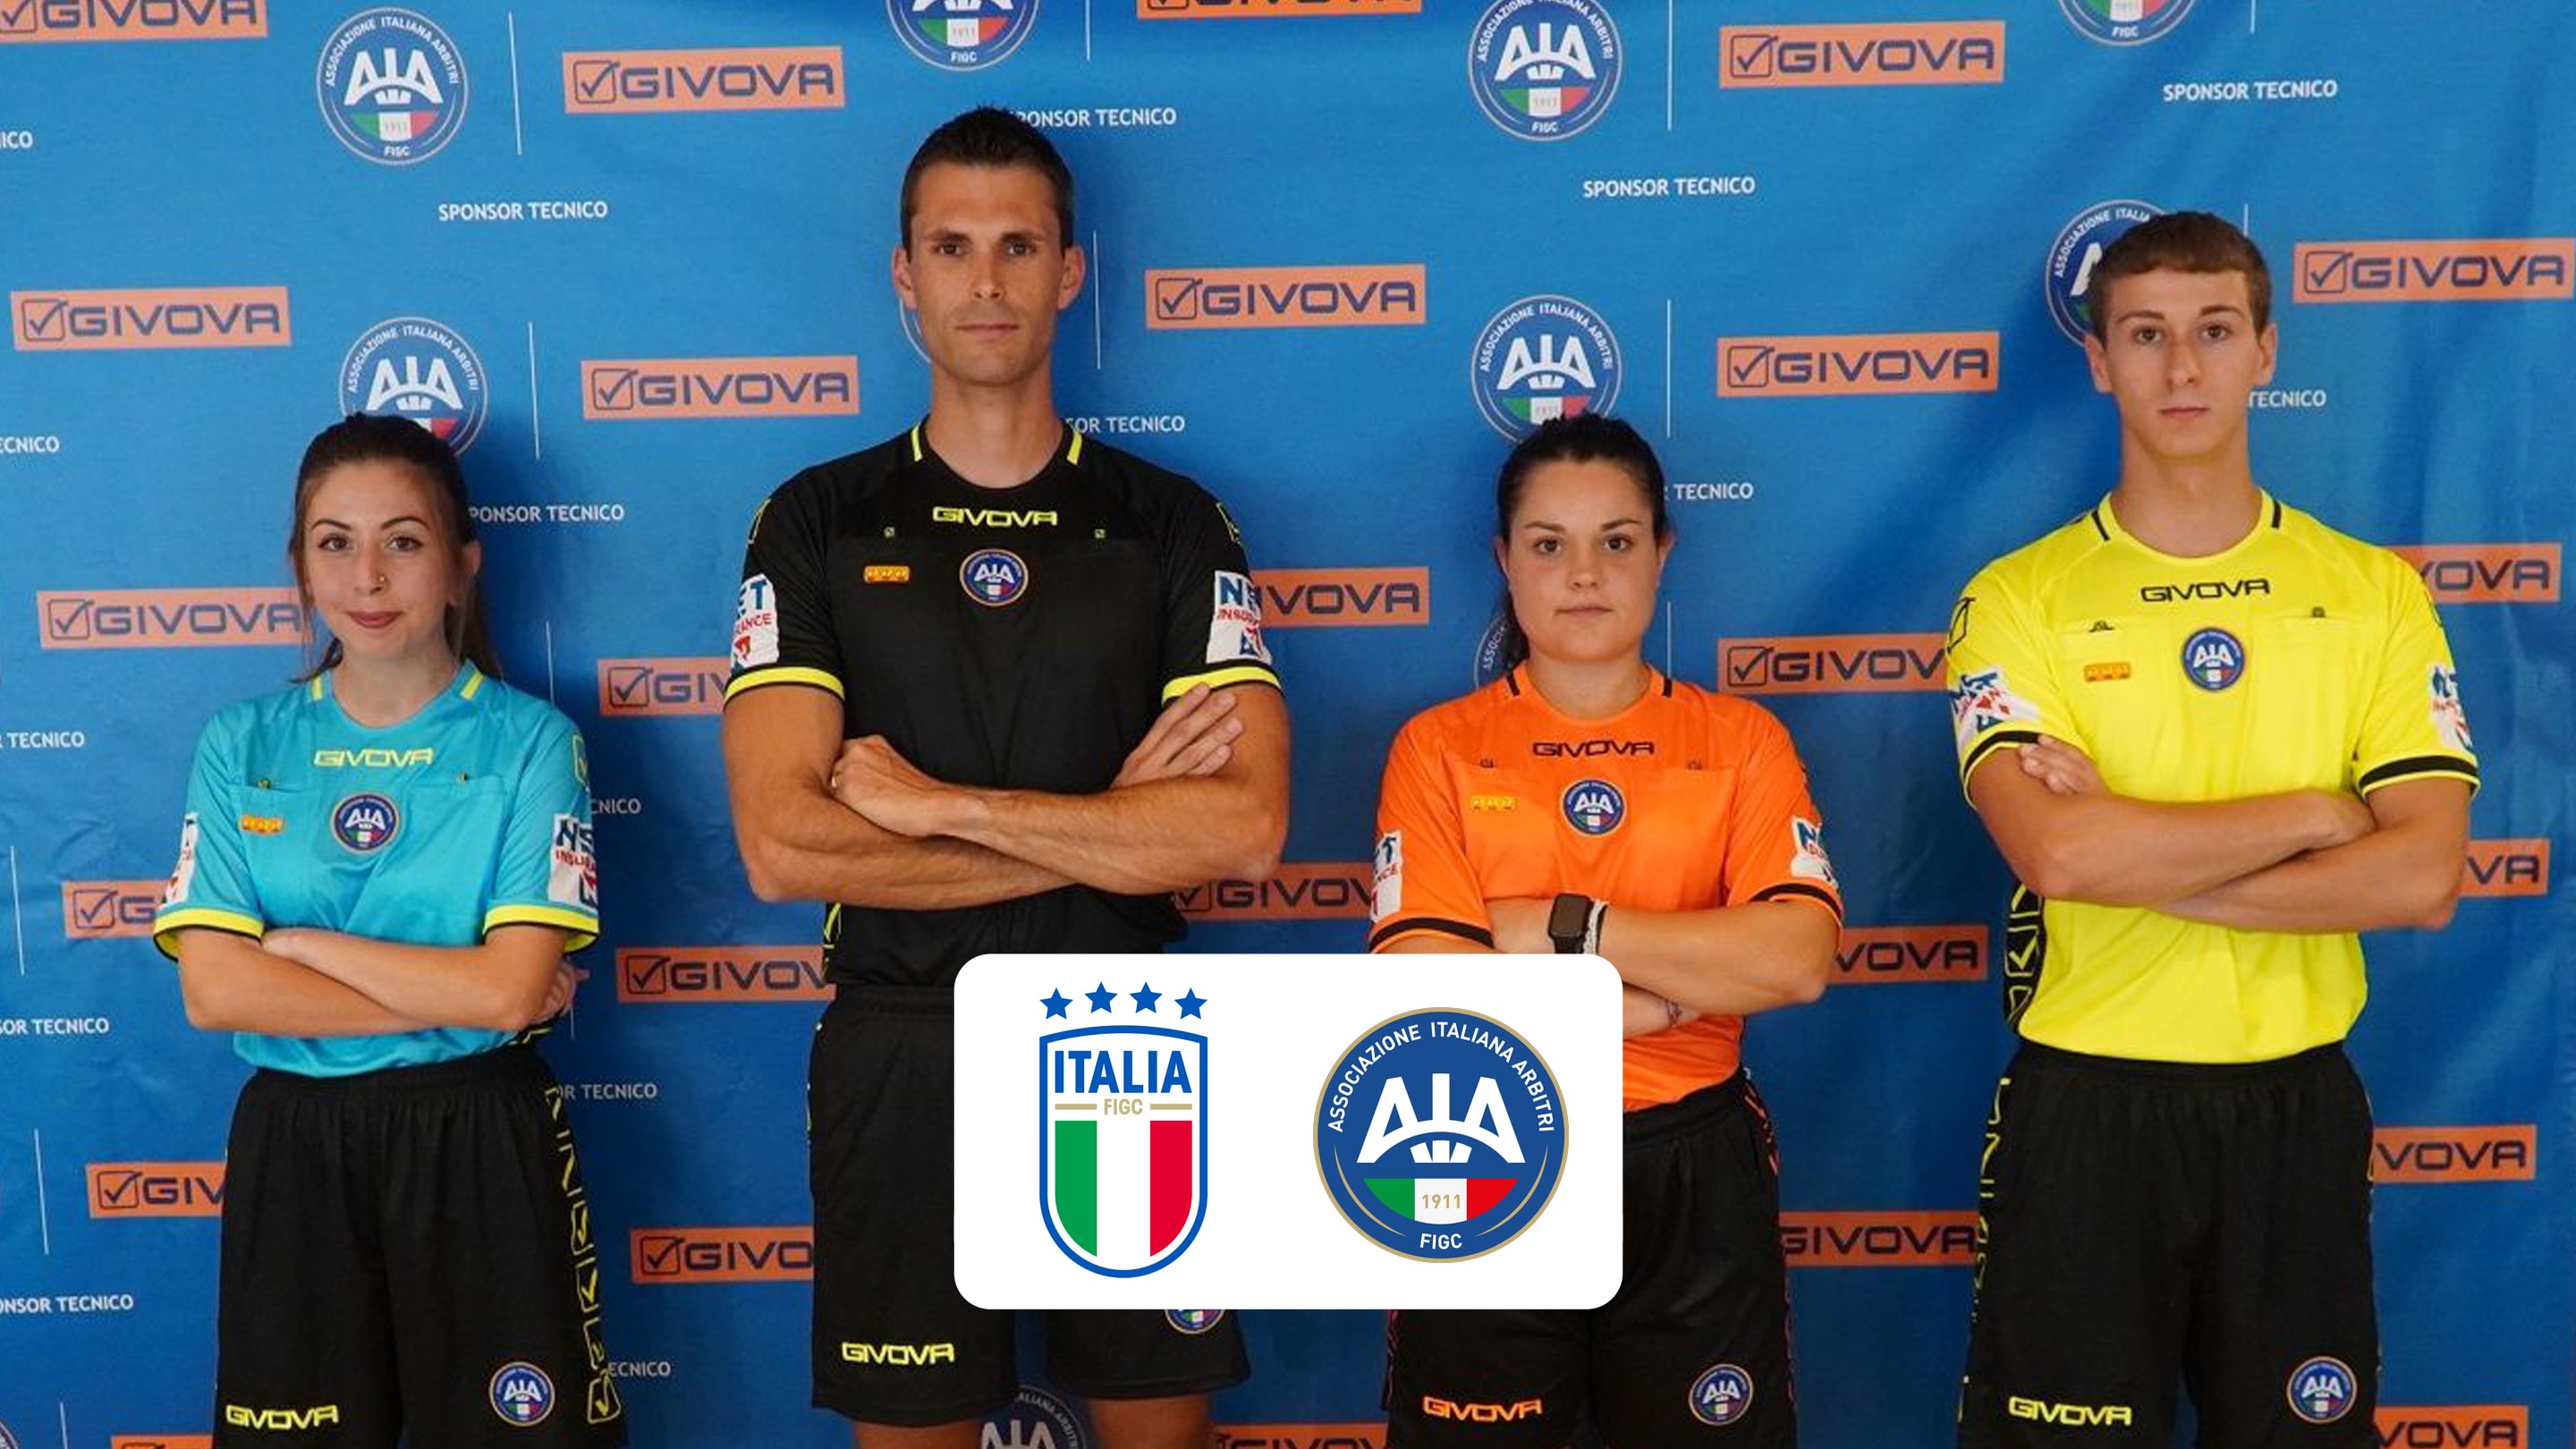 AIA, Net Insurance - Sponsor Arbitri di Calcio